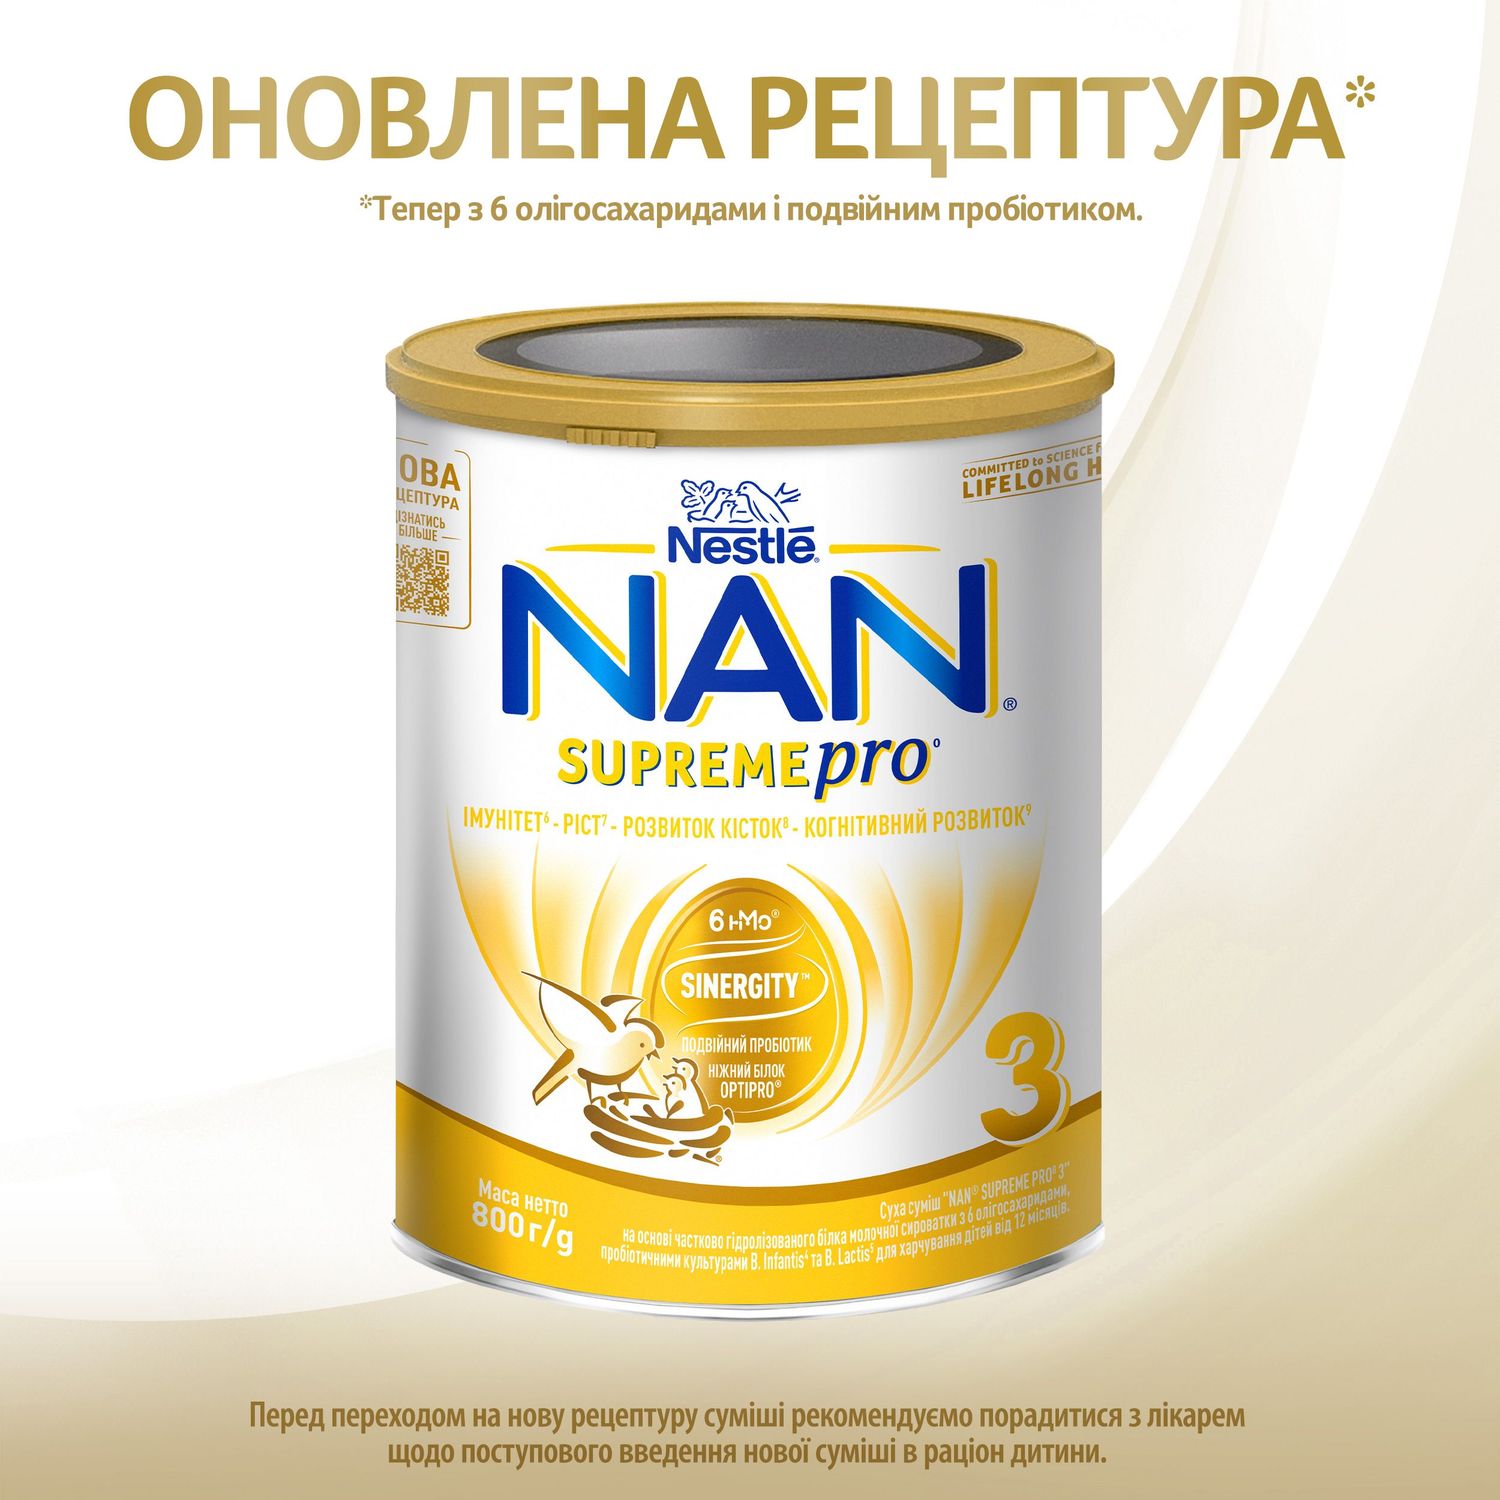 Суха суміш NAN 3 Supreme Pro з 6 олігосахаридами та подвійним пробіотиком для харчування дітей від 12 місяців 800 г - фото 4